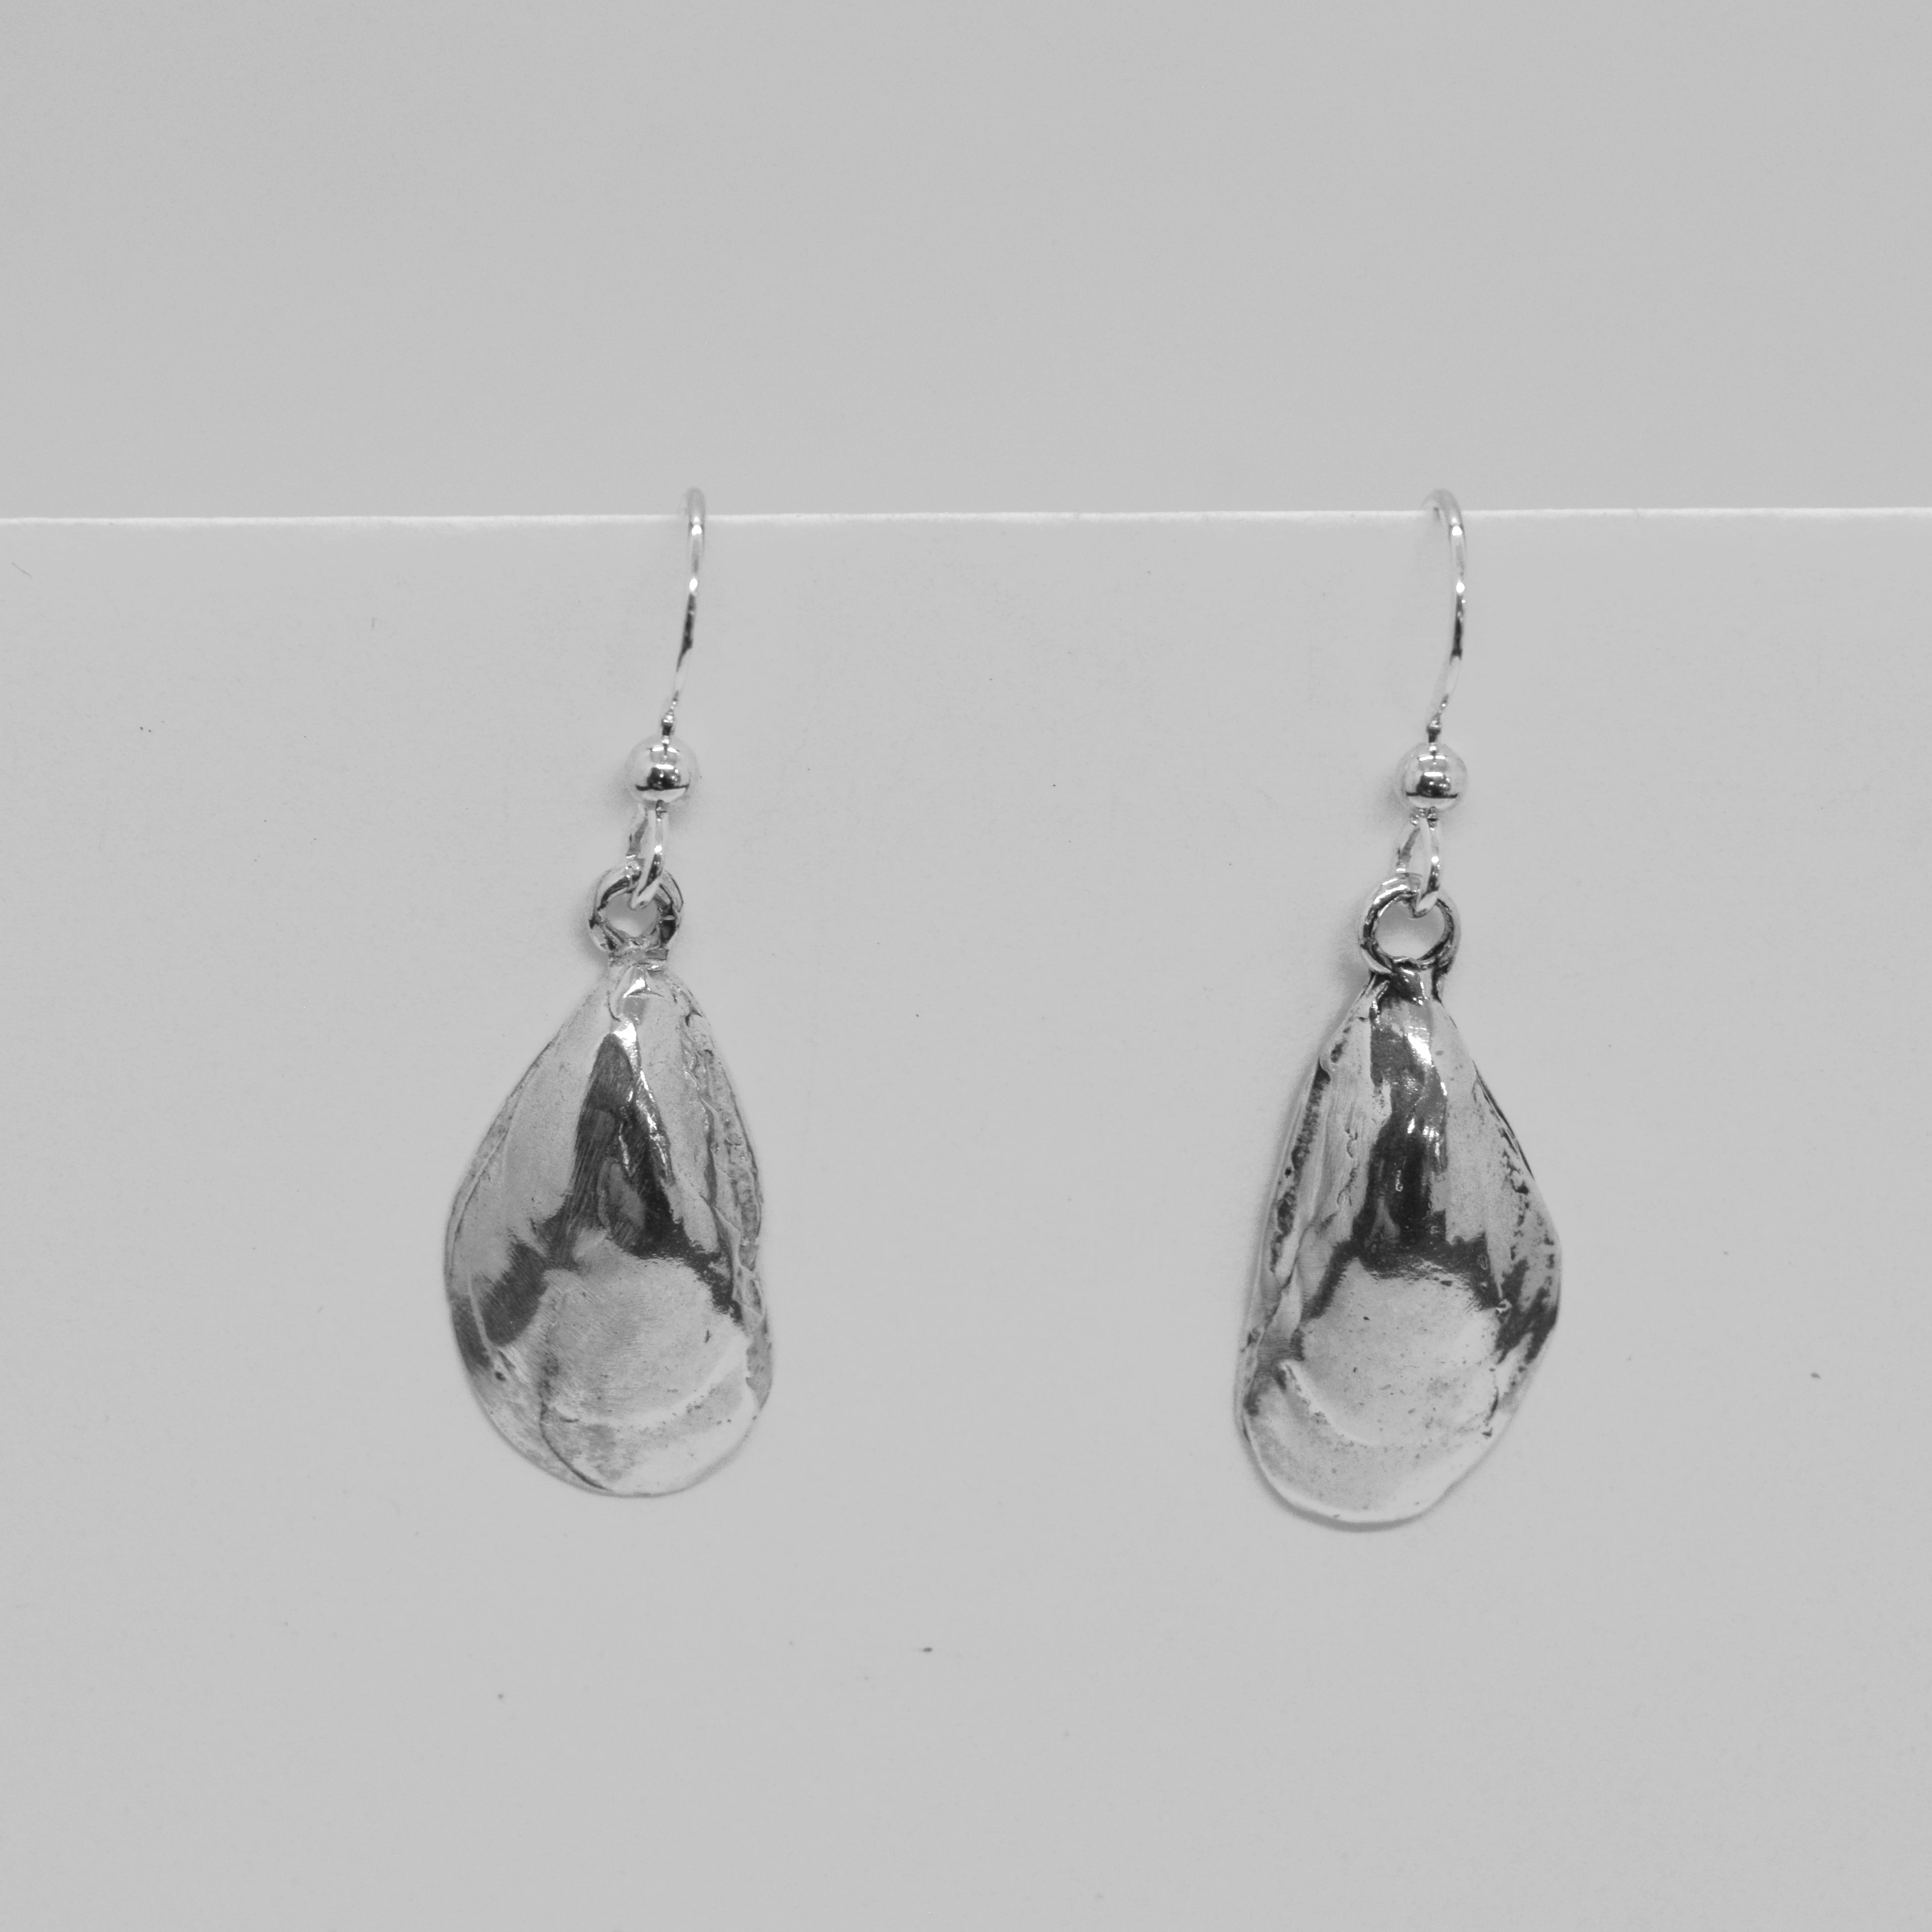 Mussel shell earrings